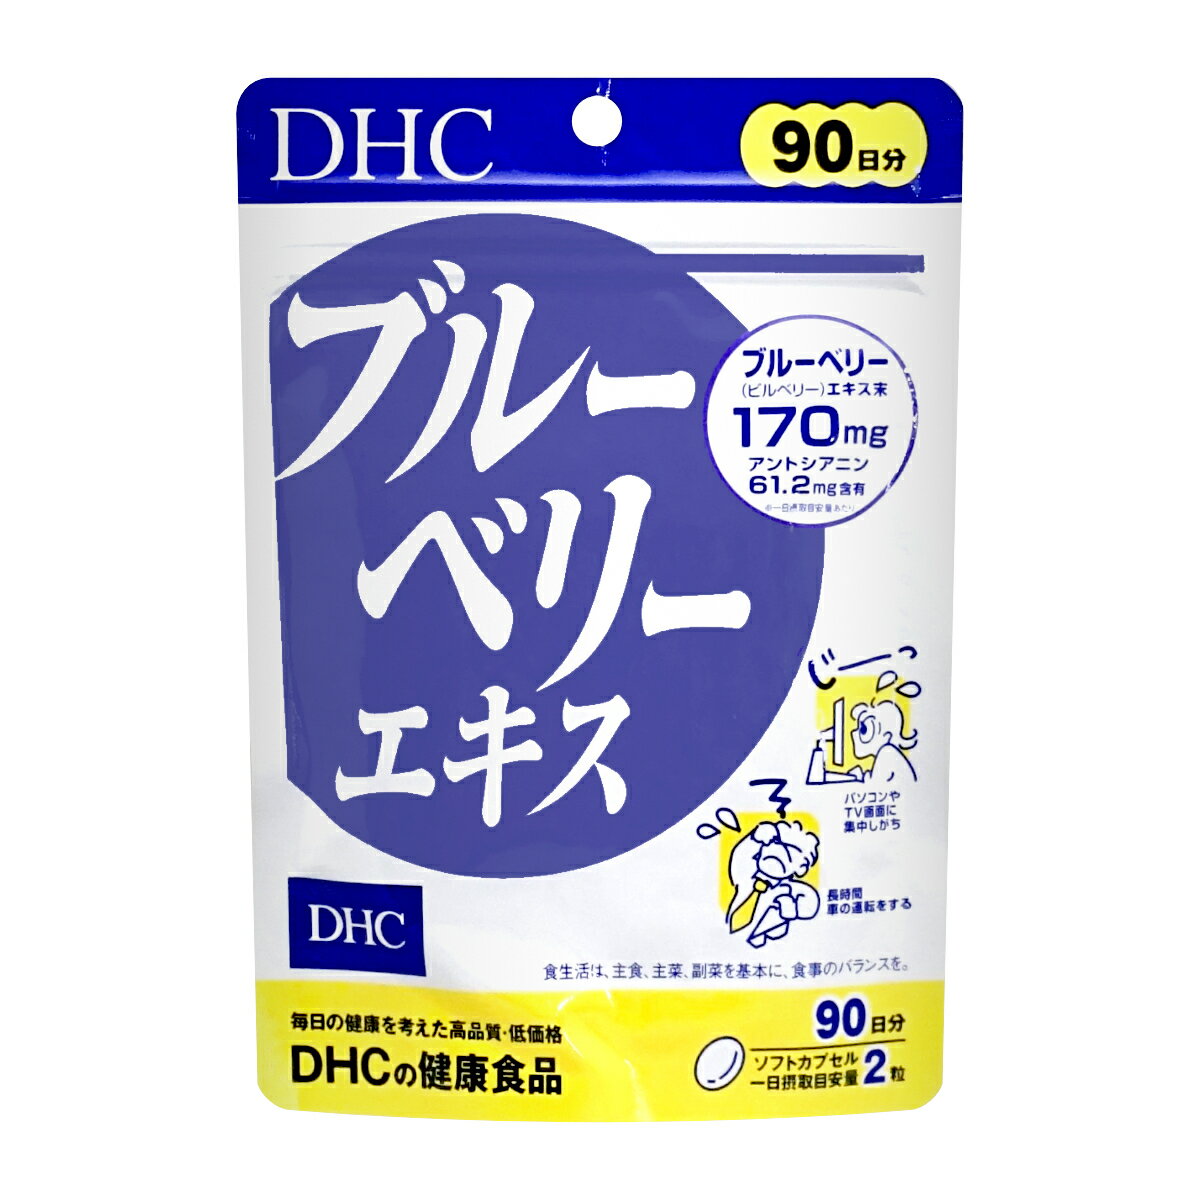 DHC ブルーベリーエキス 徳用90日分 180粒【サプリメント/健康食品】【メール便送料無料】 (6027345)